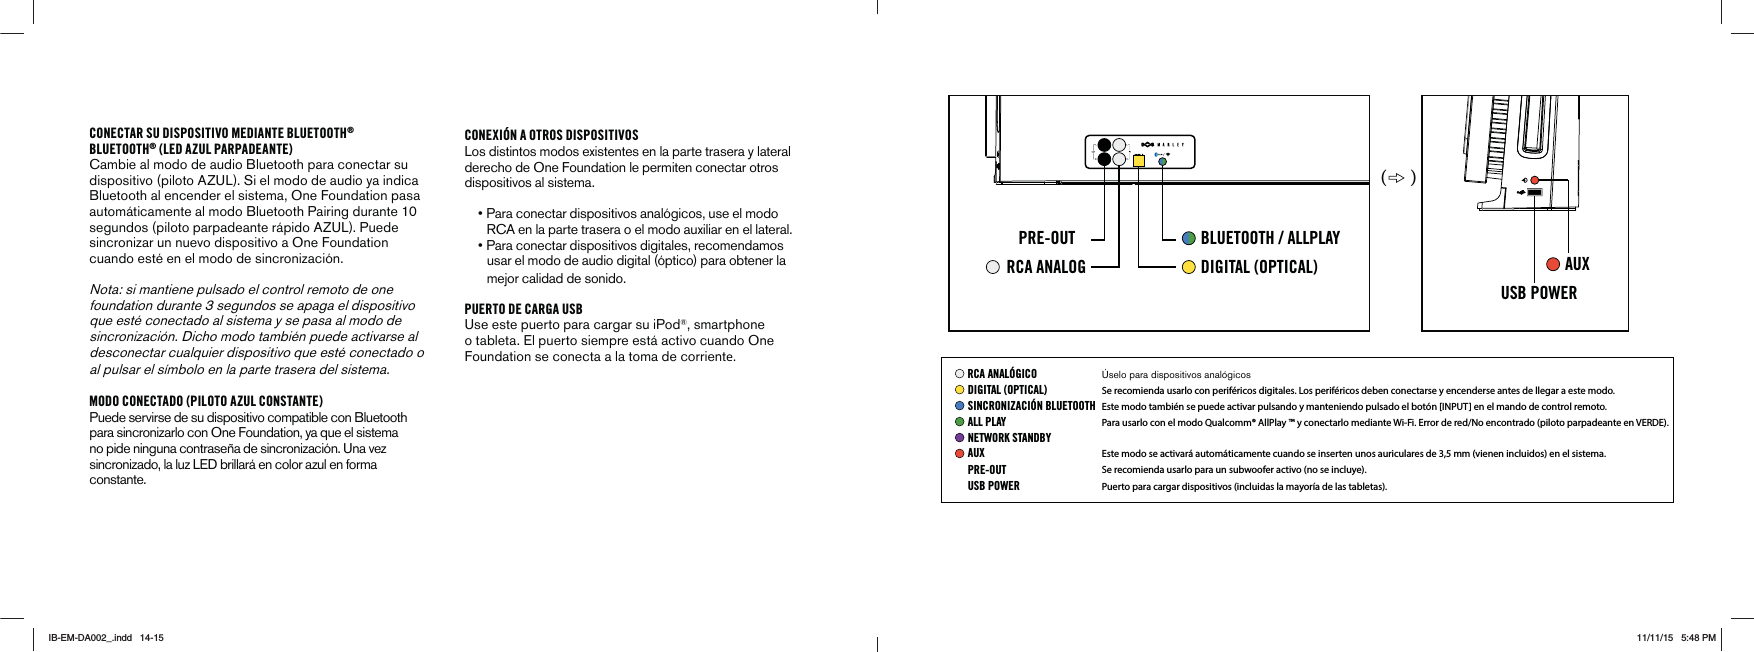 PRE-OUTRCA ANALOG DIGITAL (OPTICAL)BLUETOOTH / ALLPLAYAUXUSB POWER( )CONECTAR SU DISPOSITIVO MEDIANTE BLUETOOTH®BLUETOOTH® (LED AZUL PARPADEANTE)Cambie al modo de audio Bluetooth para conectar su DISPOSITIVOPILOTO!:5,3IELMODODEAUDIOYAINDICABluetooth al encender el sistema, One Foundation pasa AUTOM·TICAMENTEALMODO&quot;LUETOOTH0AIRINGDURANTESEGUNDOSPILOTOPARPADEANTER·PIDO!:5,0UEDEsincronizar un nuevo dispositivo a One Foundation cuando esté en el modo de sincronización.Nota: si mantiene pulsado el control remoto de one FOUNDATIONDURANTESEGUNDOSSEAPAGAELDISPOSITIVOque esté conectado al sistema y se pasa al modo de SINCRONIZACIÆN$ICHOMODOTAMBI½NPUEDEACTIVARSEALdesconectar cualquier dispositivo que esté conectado o al pulsar el símbolo en la parte trasera del sistema.MODO CONECTADO (PILOTO AZUL CONSTANTE)Puede servirse de su dispositivo compatible con Bluetooth para sincronizarlo con One Foundation, ya que el sistema NOPIDENINGUNACONTRASEÅADESINCRONIZACIÆN5NAVEZSINCRONIZADOLALUZ,%$BRILLAR·ENCOLORAZULENFORMAconstante.CONEXIÓN A OTROS DISPOSITIVOS,OSDISTINTOSMODOSEXISTENTESENLAPARTETRASERAYLATERAL derecho de One Foundation le permiten conectar otros dispositivos al sistema.     s0ARACONECTARDISPOSITIVOSANALÆGICOSUSEELMODO 2#!ENLAPARTETRASERAOELMODOAUXILIARENELLATERALs0ARACONECTARDISPOSITIVOSDIGITALESRECOMENDAMOS        usar el modo de audio digital (óptico) para obtener la         mejor calidad de sonido.PUERTO DE CARGA USB5SEESTEPUERTOPARACARGARSUI0OD®, smartphone o tableta. El puerto siempre está activo cuando One Foundation se conecta a la toma de corriente.RCA ANALÓGICO Úselo para dispositivos analógicosSe recomienda usarlo con periféricos digitales. Los periféricos deben conectarse y encenderse antes de llegar a este modo.DIGITAL (OPTICAL)Este modo también se puede activar pulsando y manteniendo pulsado el botón [INPUT] en el mando de control remoto.SINCRONIZACIÓN BLUETOOTHPara usarlo con el modo Qualcomm® AllPlay ™ y conectarlo mediante Wi-Fi. Error de red/No encontrado (piloto parpadeante en VERDE).ALL PLAYPRE-OUT Se recomienda usarlo para un subwoofer activo (no se incluye).Puerto para cargar dispositivos (incluidas la mayoría de las tabletas).USB POWERNETWORK STANDBYEste modo se activará automáticamente cuando se inserten unos auriculares de 3,5 mm (vienen incluidos) en el sistema.AUXIB-EM-DA002_.indd   14-15 11/11/15   5:48 PM